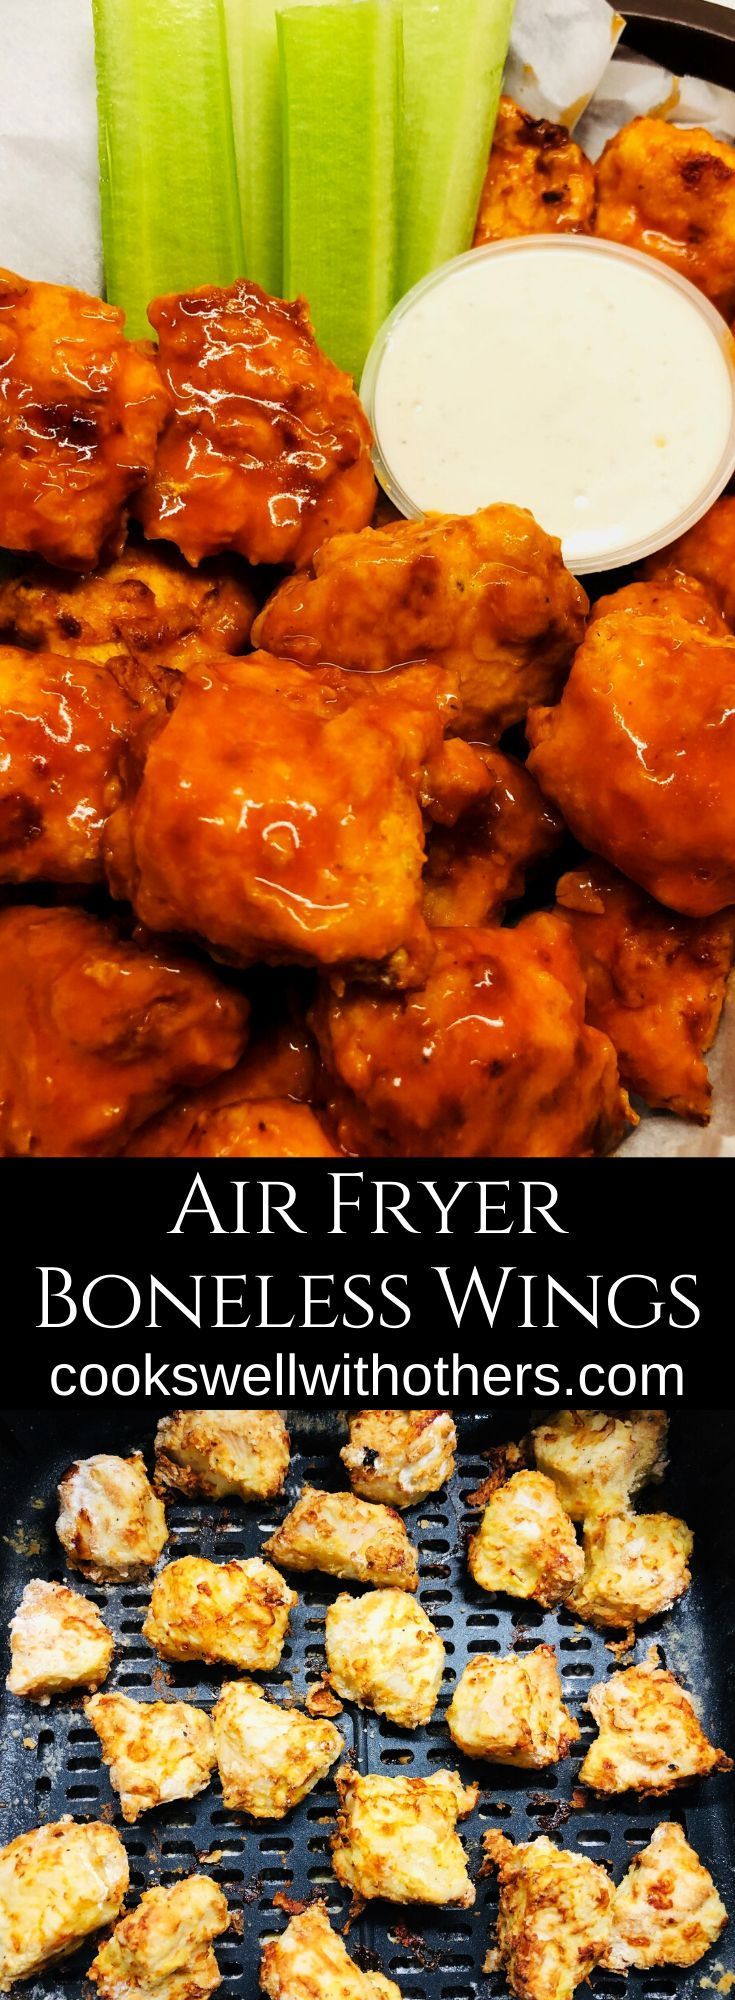 Air Fryer Boneless Wings -   19 air fryer recipes chicken boneless wings ideas